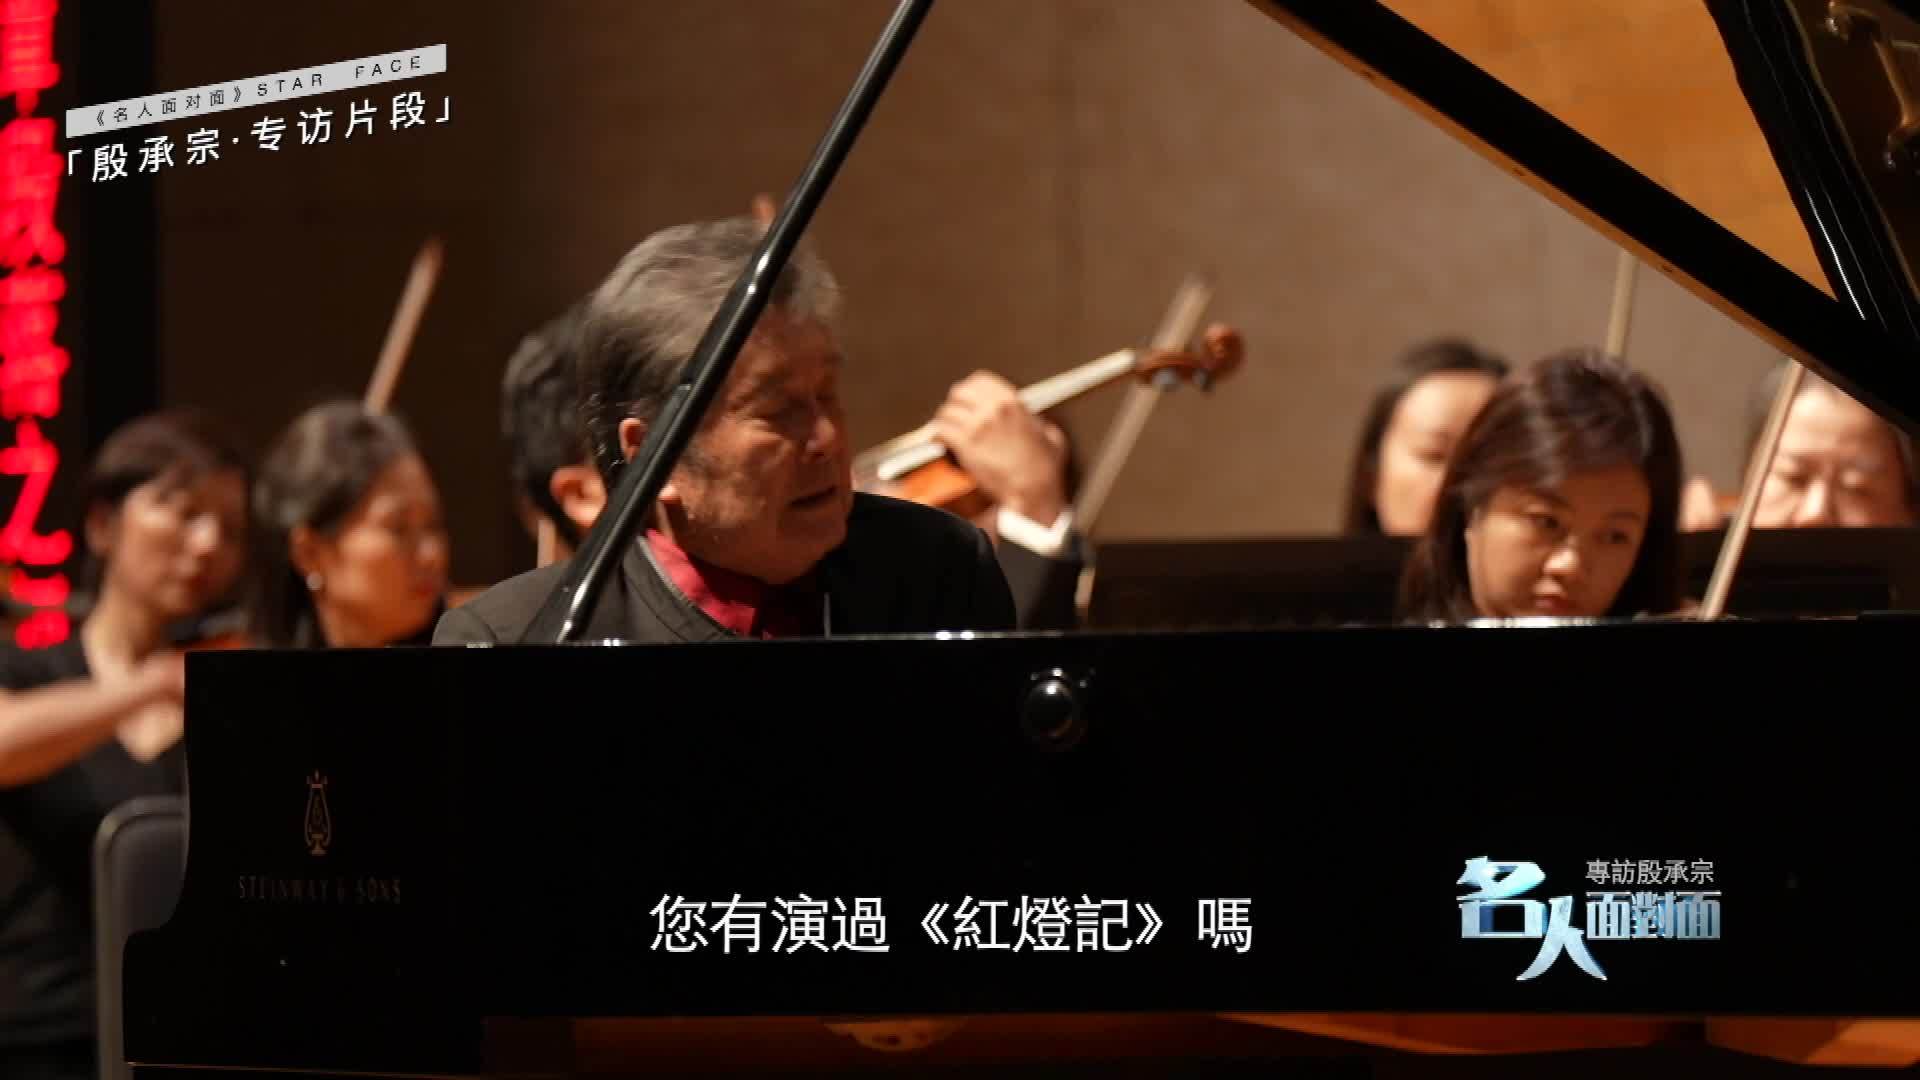 《红灯记》让殷承宗得到国际认可 老外惊叹京剧和钢琴竟能如此完美结合